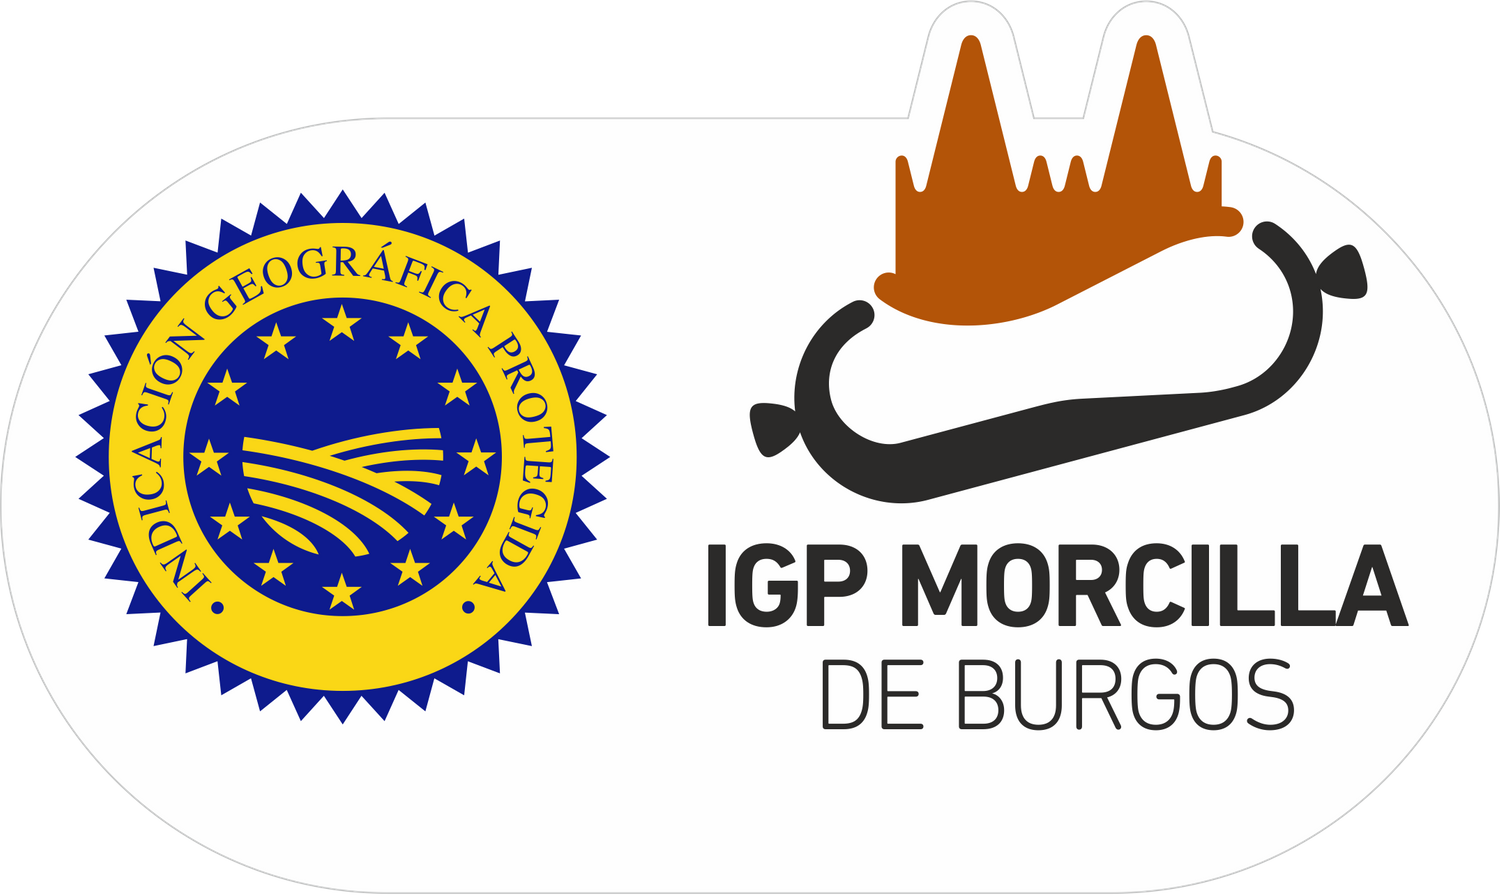 IGP MORCILLA DE BURGOS